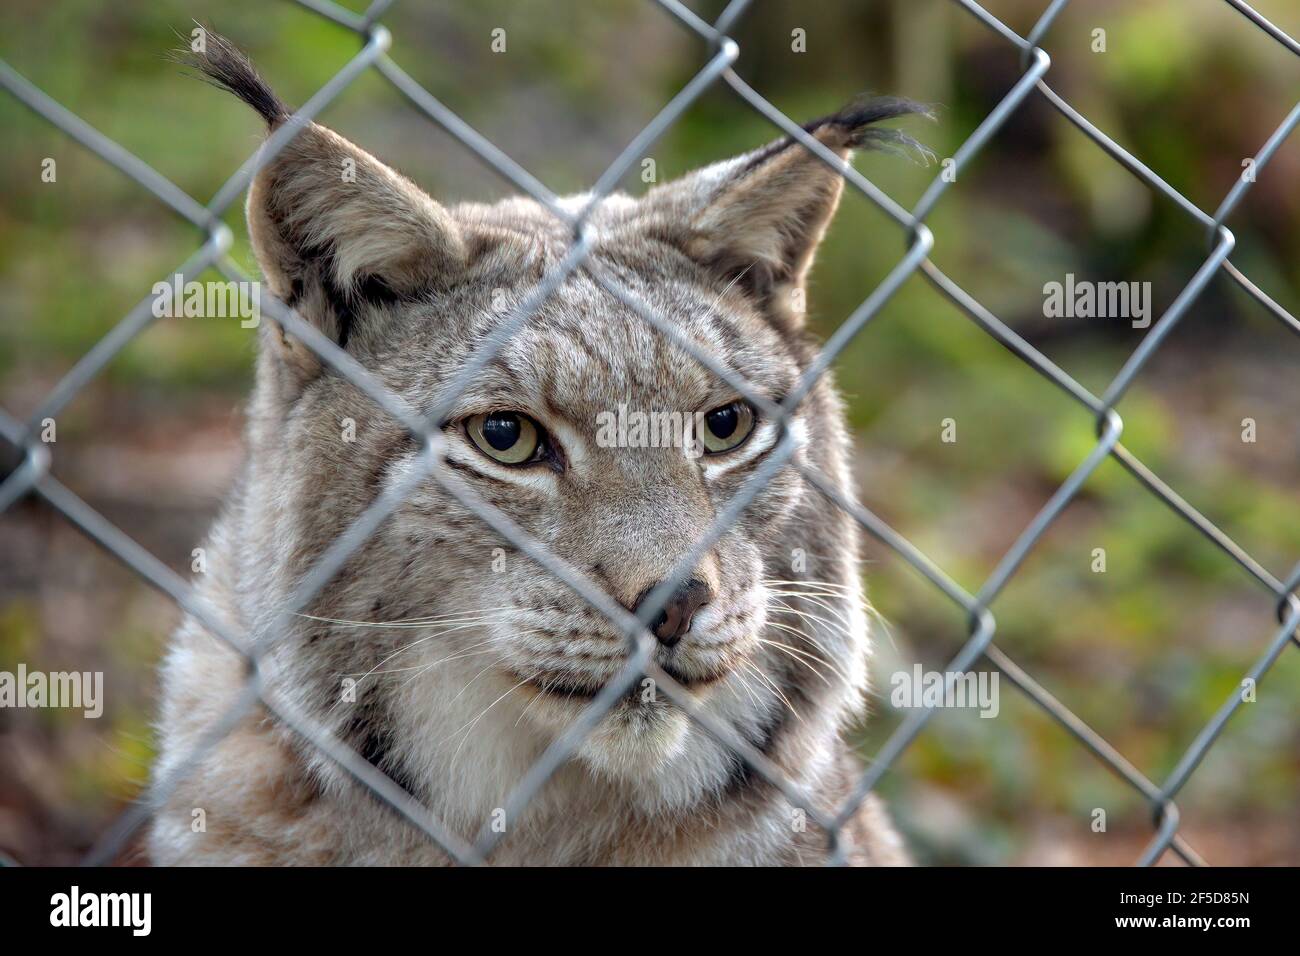 Lynx eurasien (Lynx lynx), regardant à travers une clôture en treillis métallique, Allemagne Banque D'Images